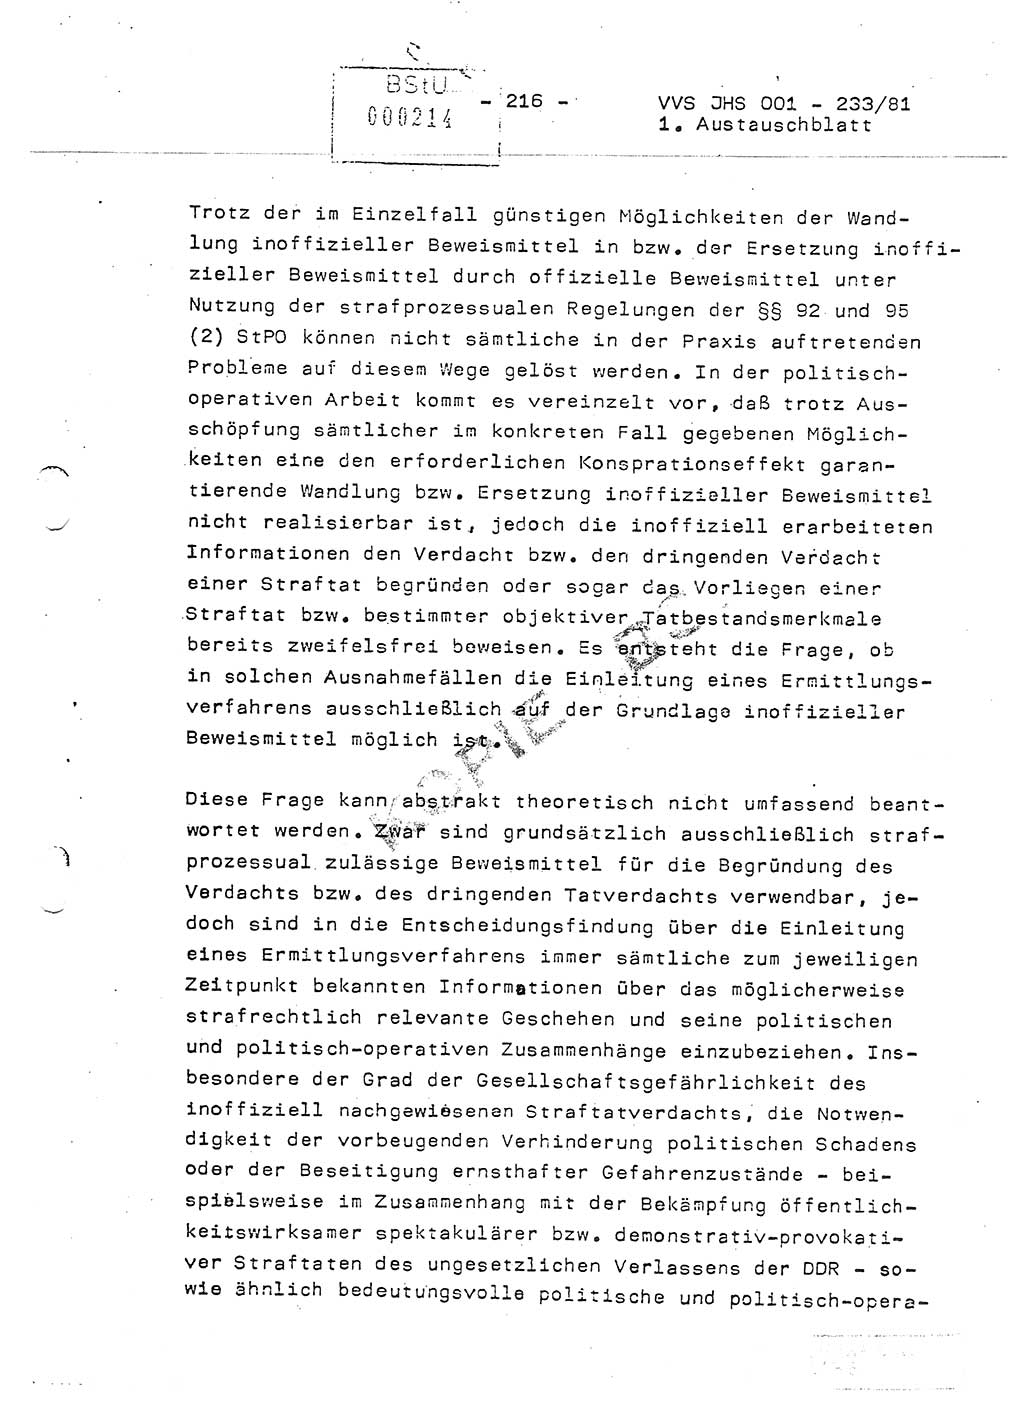 Dissertation Oberstleutnant Horst Zank (JHS), Oberstleutnant Dr. Karl-Heinz Knoblauch (JHS), Oberstleutnant Gustav-Adolf Kowalewski (HA Ⅸ), Oberstleutnant Wolfgang Plötner (HA Ⅸ), Ministerium für Staatssicherheit (MfS) [Deutsche Demokratische Republik (DDR)], Juristische Hochschule (JHS), Vertrauliche Verschlußsache (VVS) o001-233/81, Potsdam 1981, Blatt 216 (Diss. MfS DDR JHS VVS o001-233/81 1981, Bl. 216)